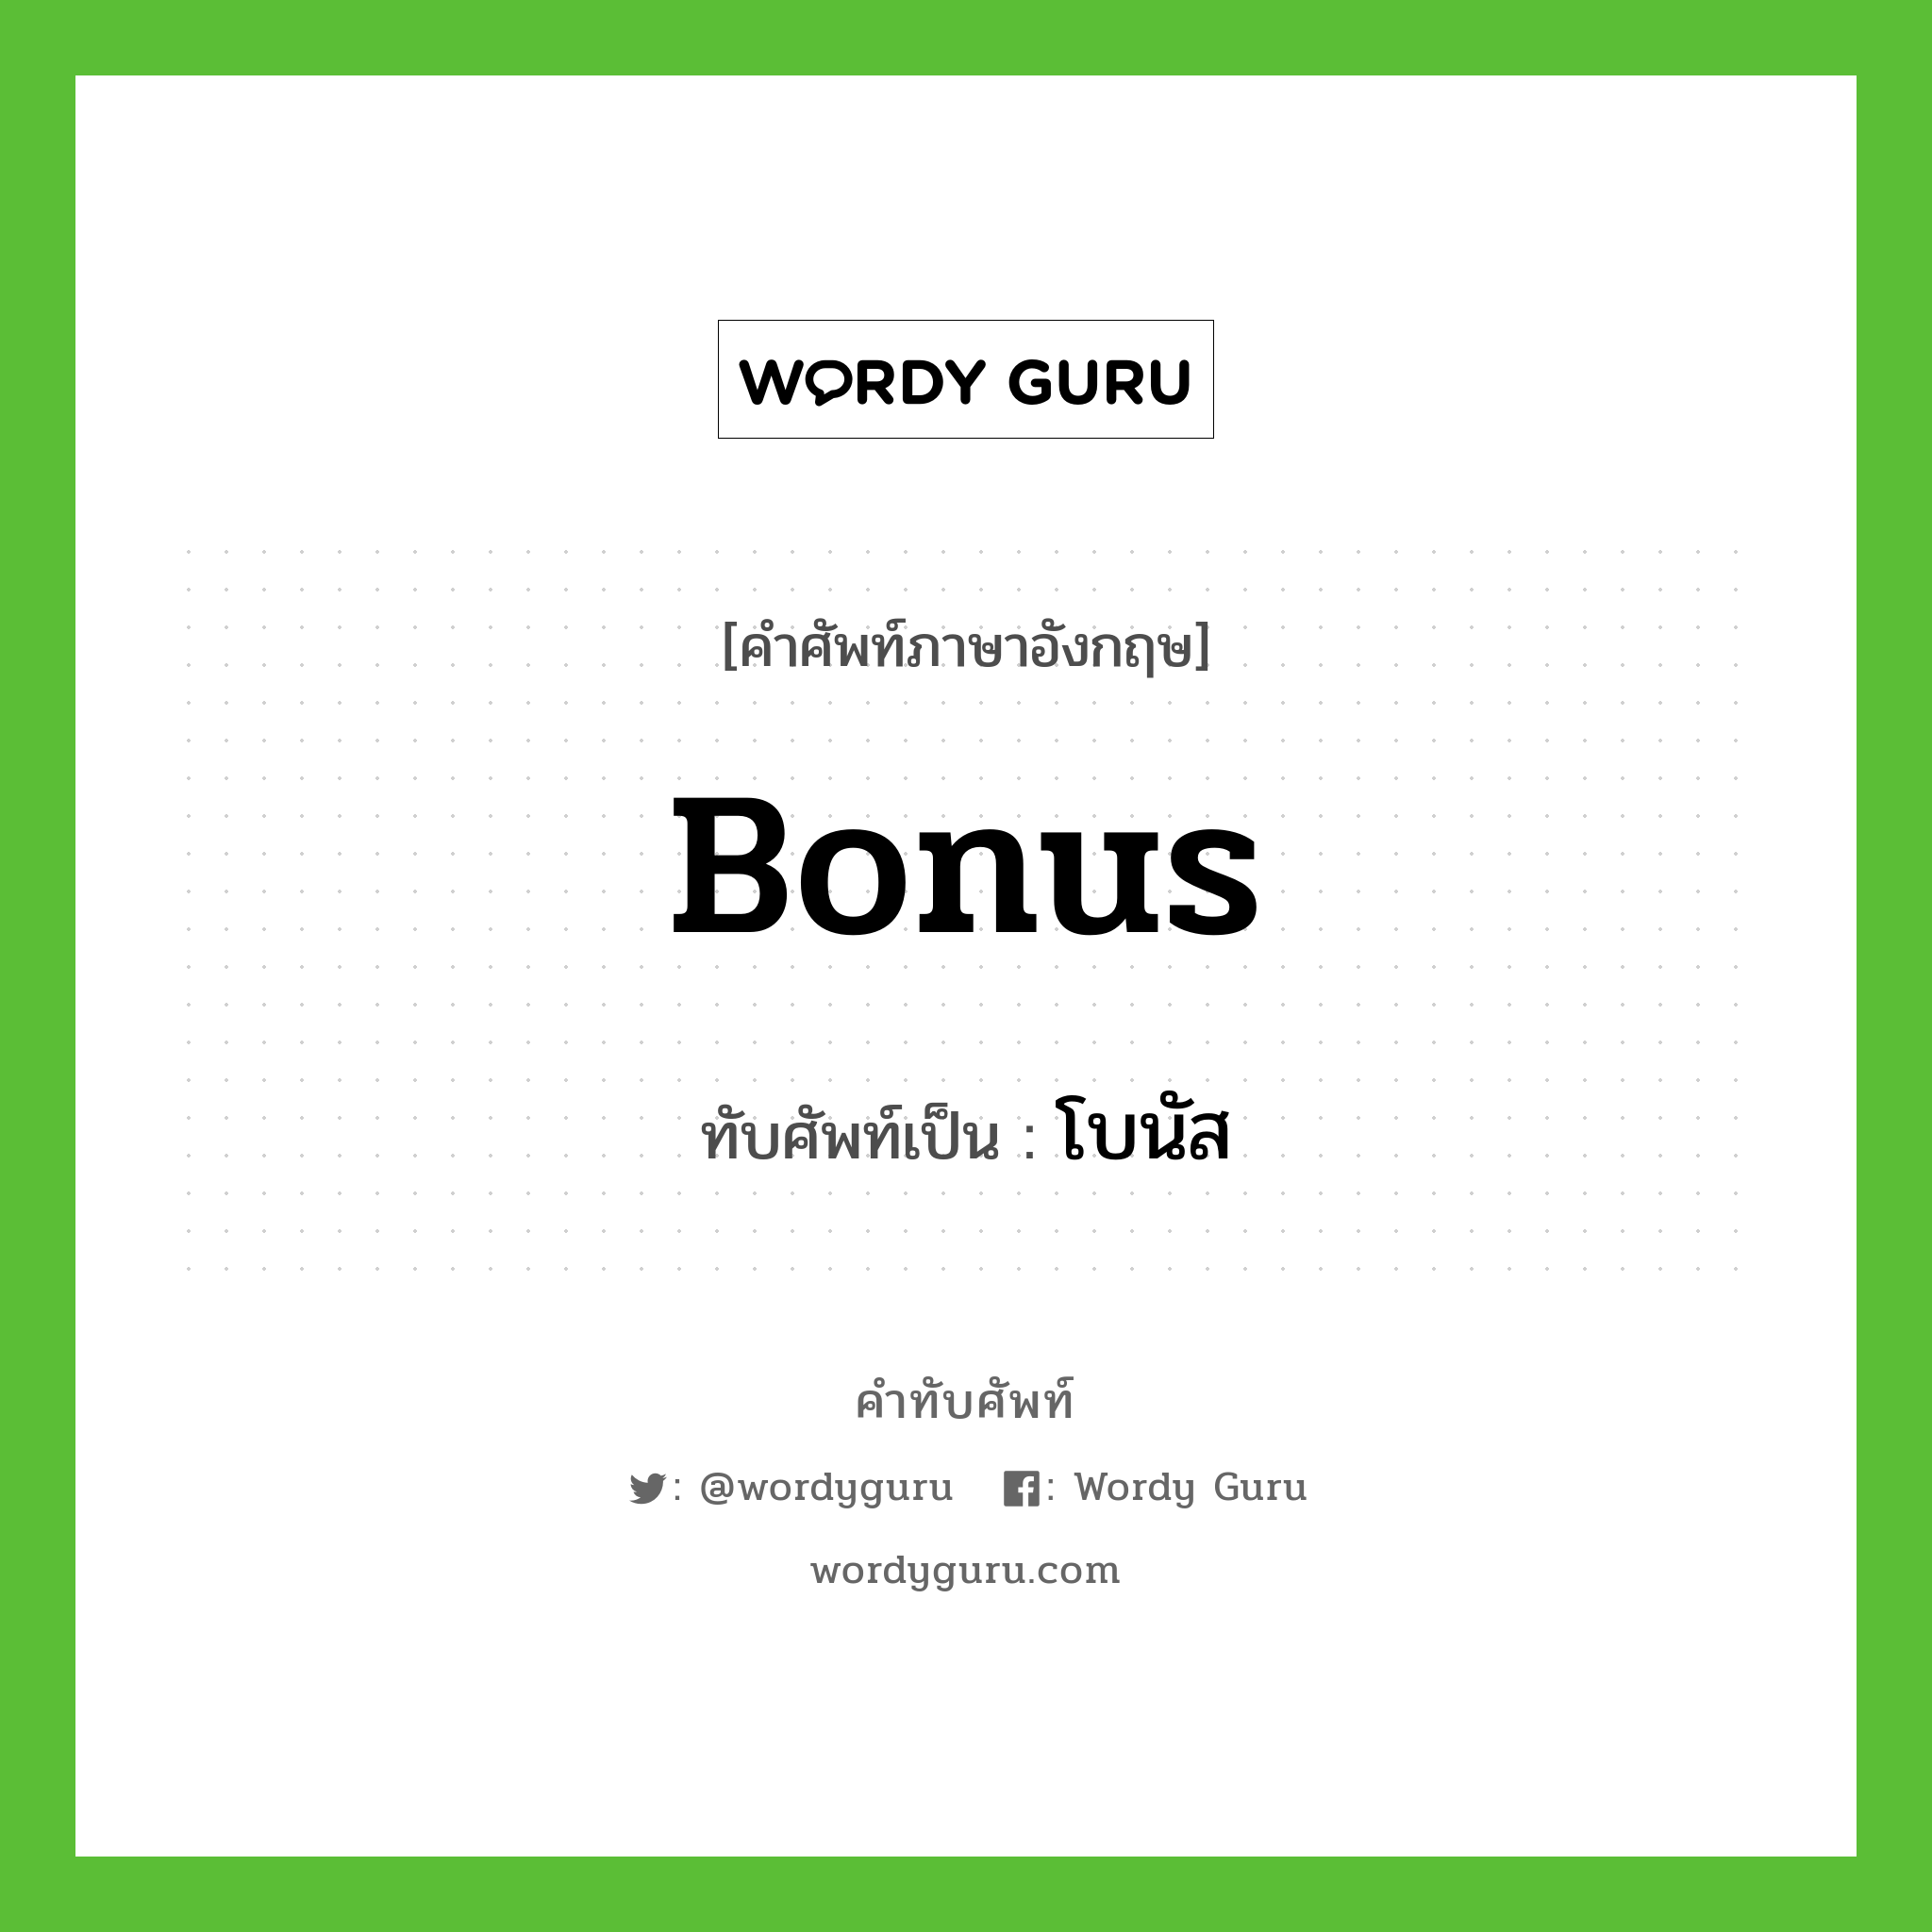 bonus เขียนเป็นคำไทยว่าอะไร?, คำศัพท์ภาษาอังกฤษ bonus ทับศัพท์เป็น โบนัส